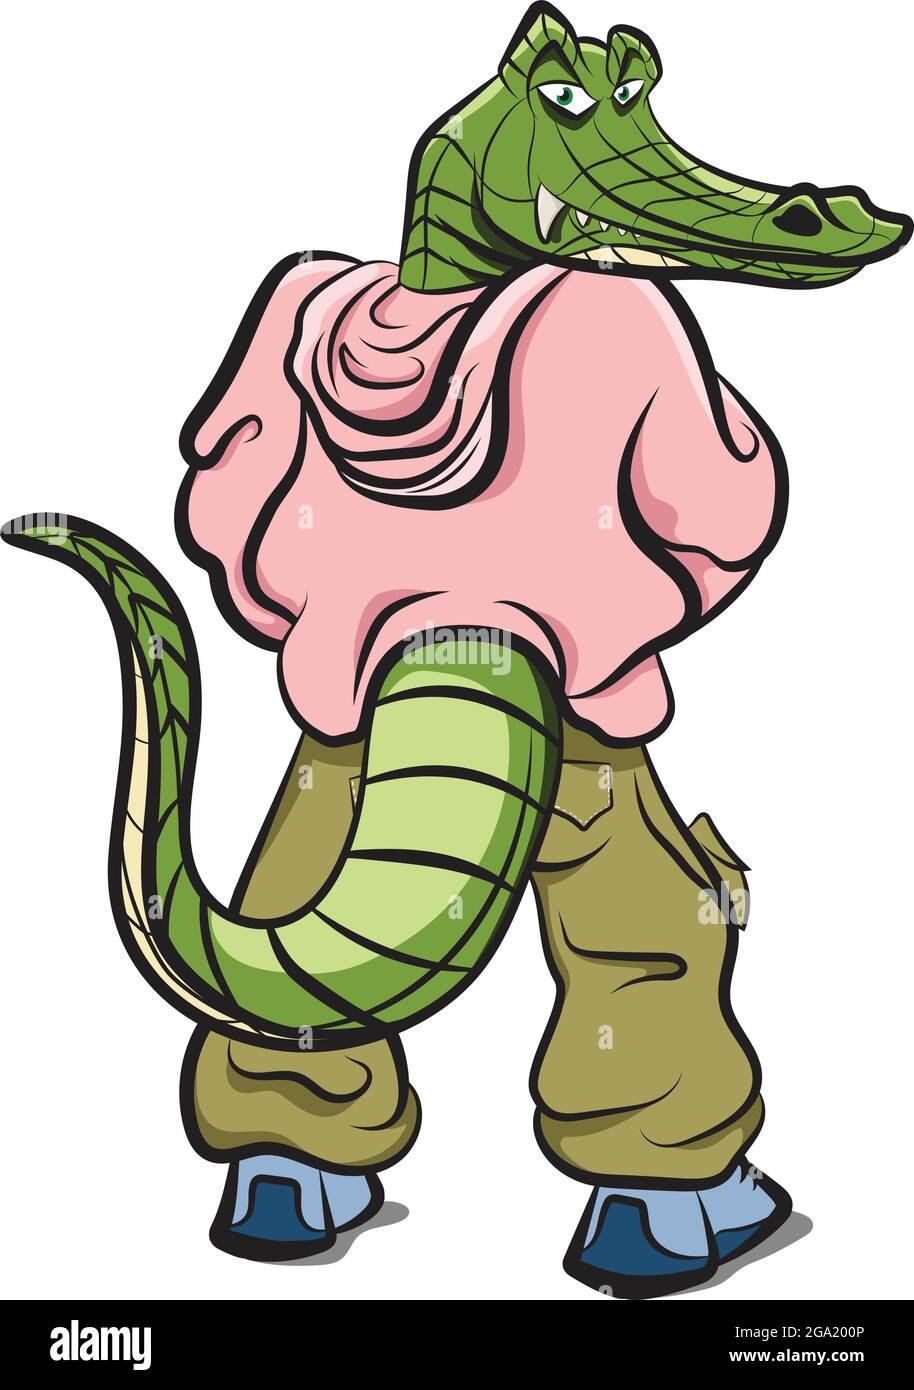 Anthropomorphe Tiere. Ein Mensch mit Alligatorkopf in Hipster-Kleidung. Coole Krokodil Charakter trägt Sweatshirt Baggy Hosen und Schuhe. Anthrop Stock Vektor